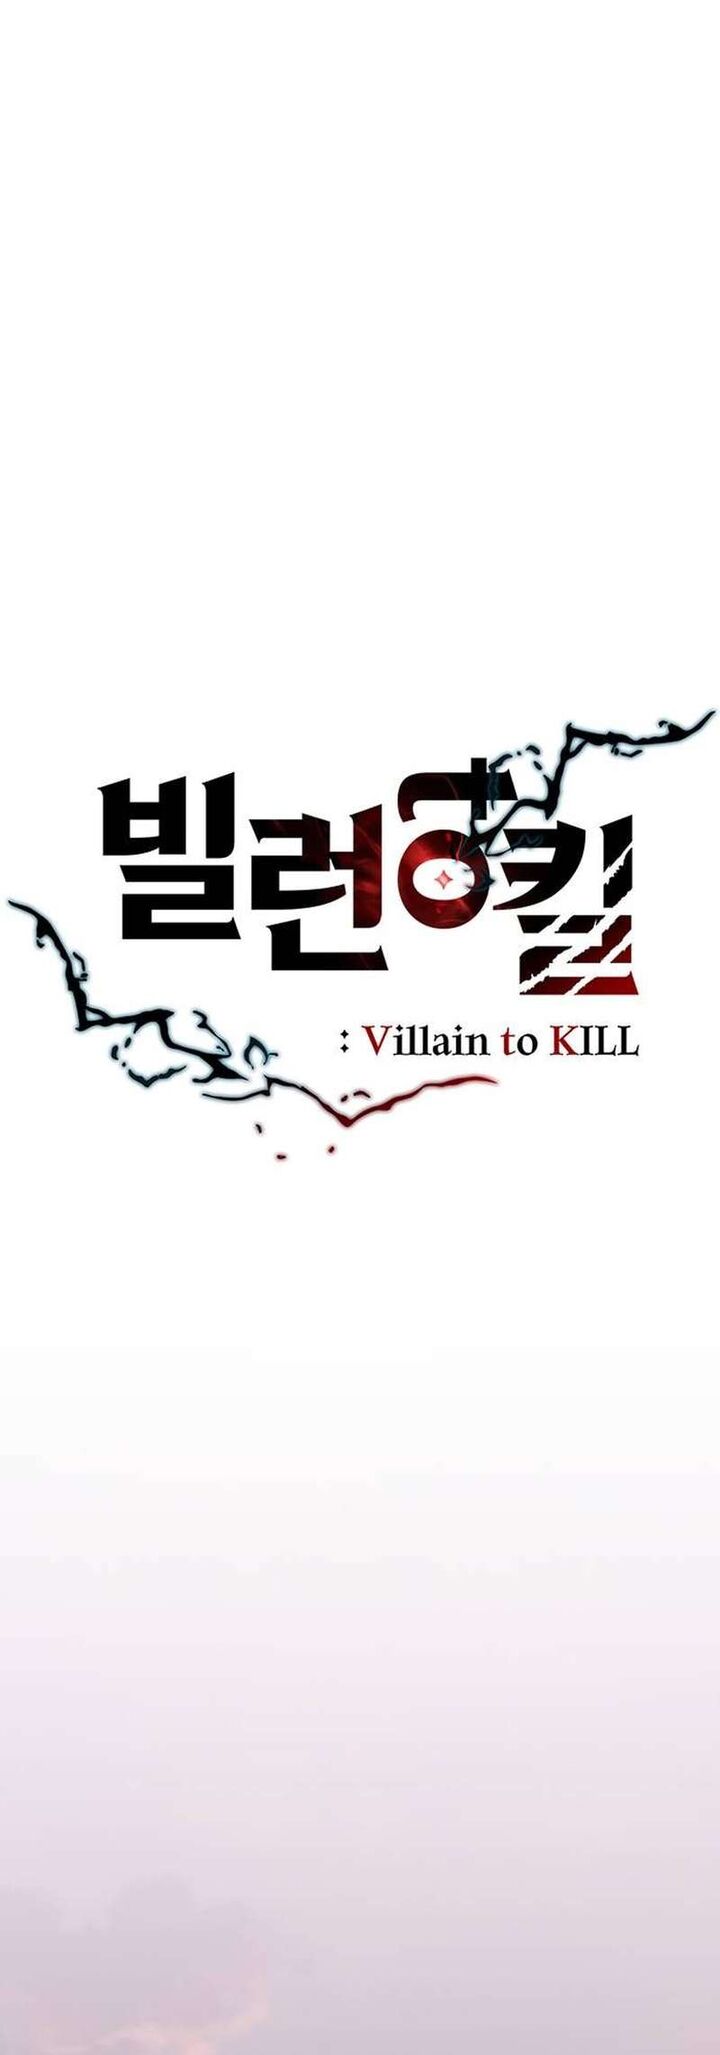 Villain To Kill 141 19